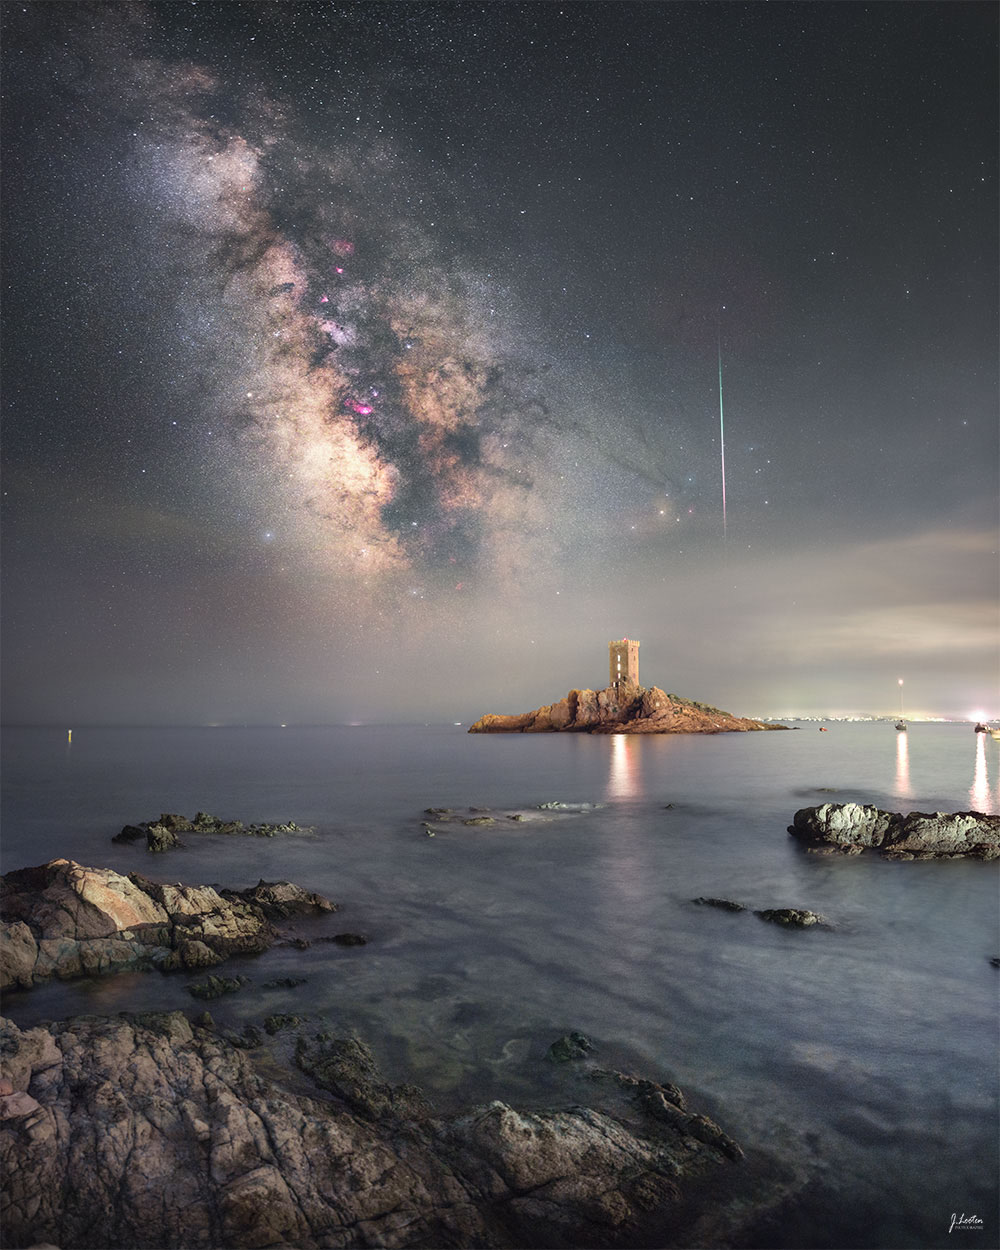 Malerischer felsiger Strand am Mittelmeer im französischen Le Dramont mit der Insel île d’Or island im Vordergrund, dahinter leuchten die Milchstraße und ein Meteor der Perseiden.